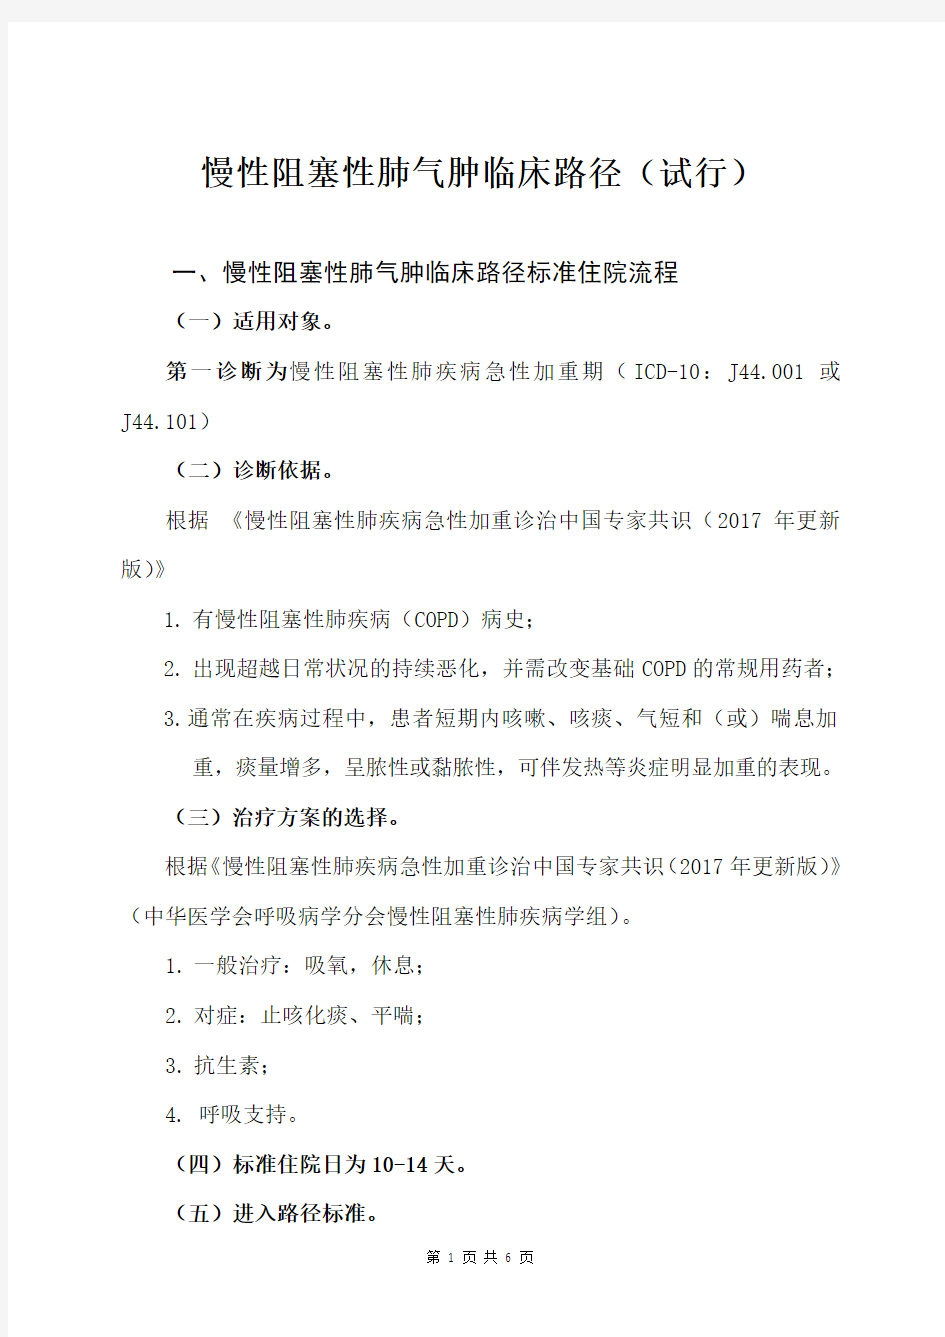 临床路径标准住院流程  Jiangxi.doc